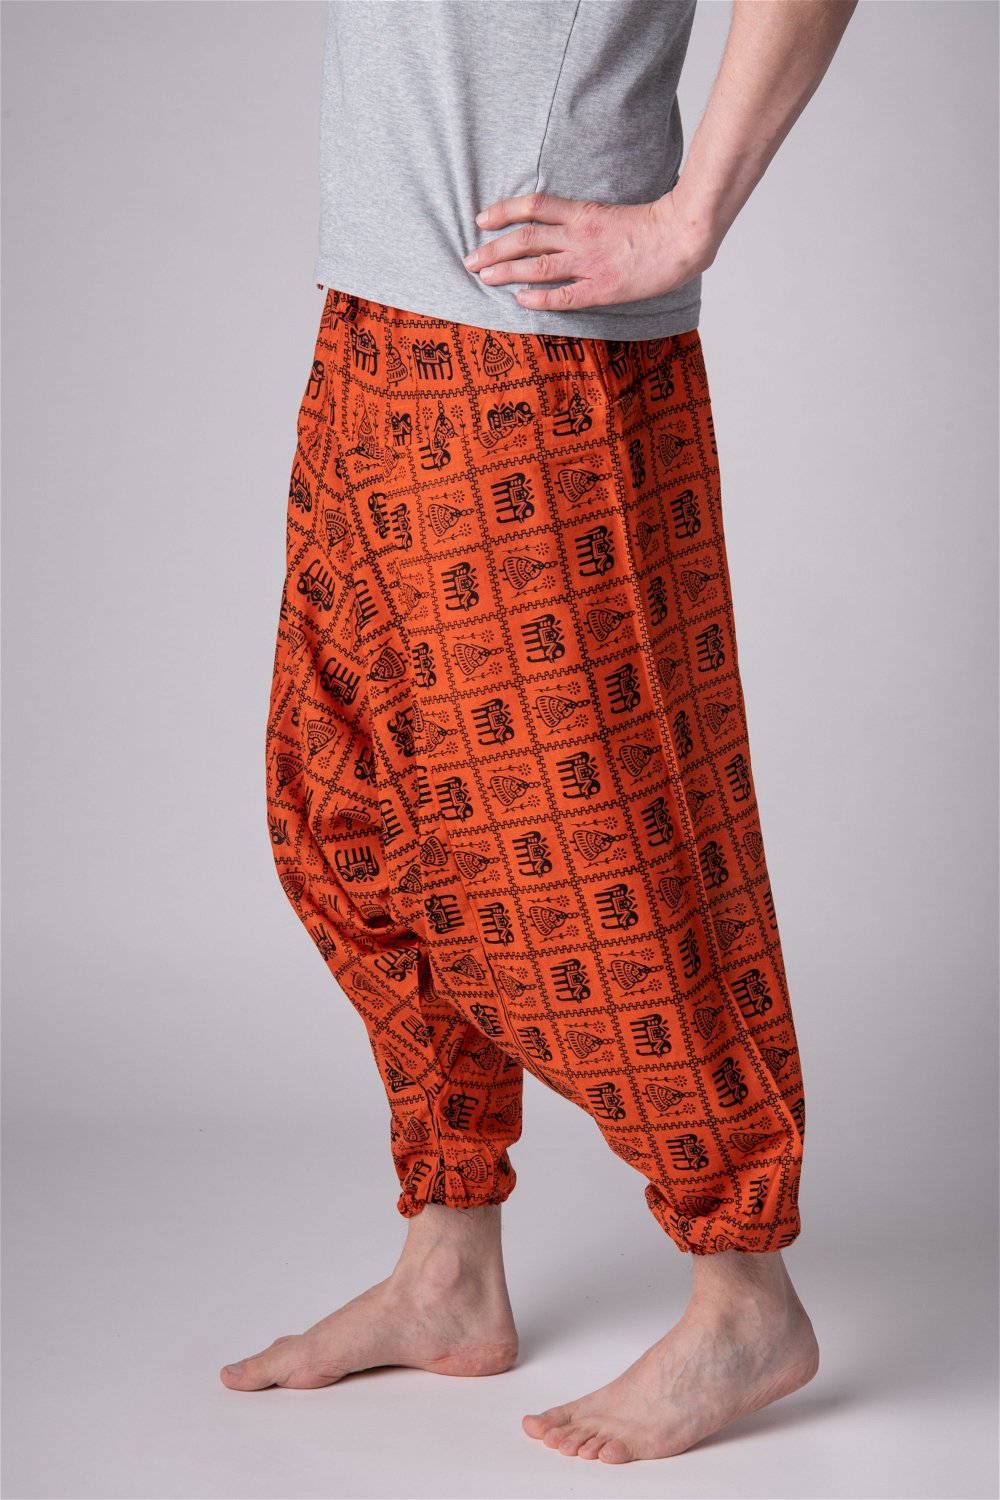 Штаны Али-Баба оранжевые со слонами, универсальный, оранжевые со слонами, 